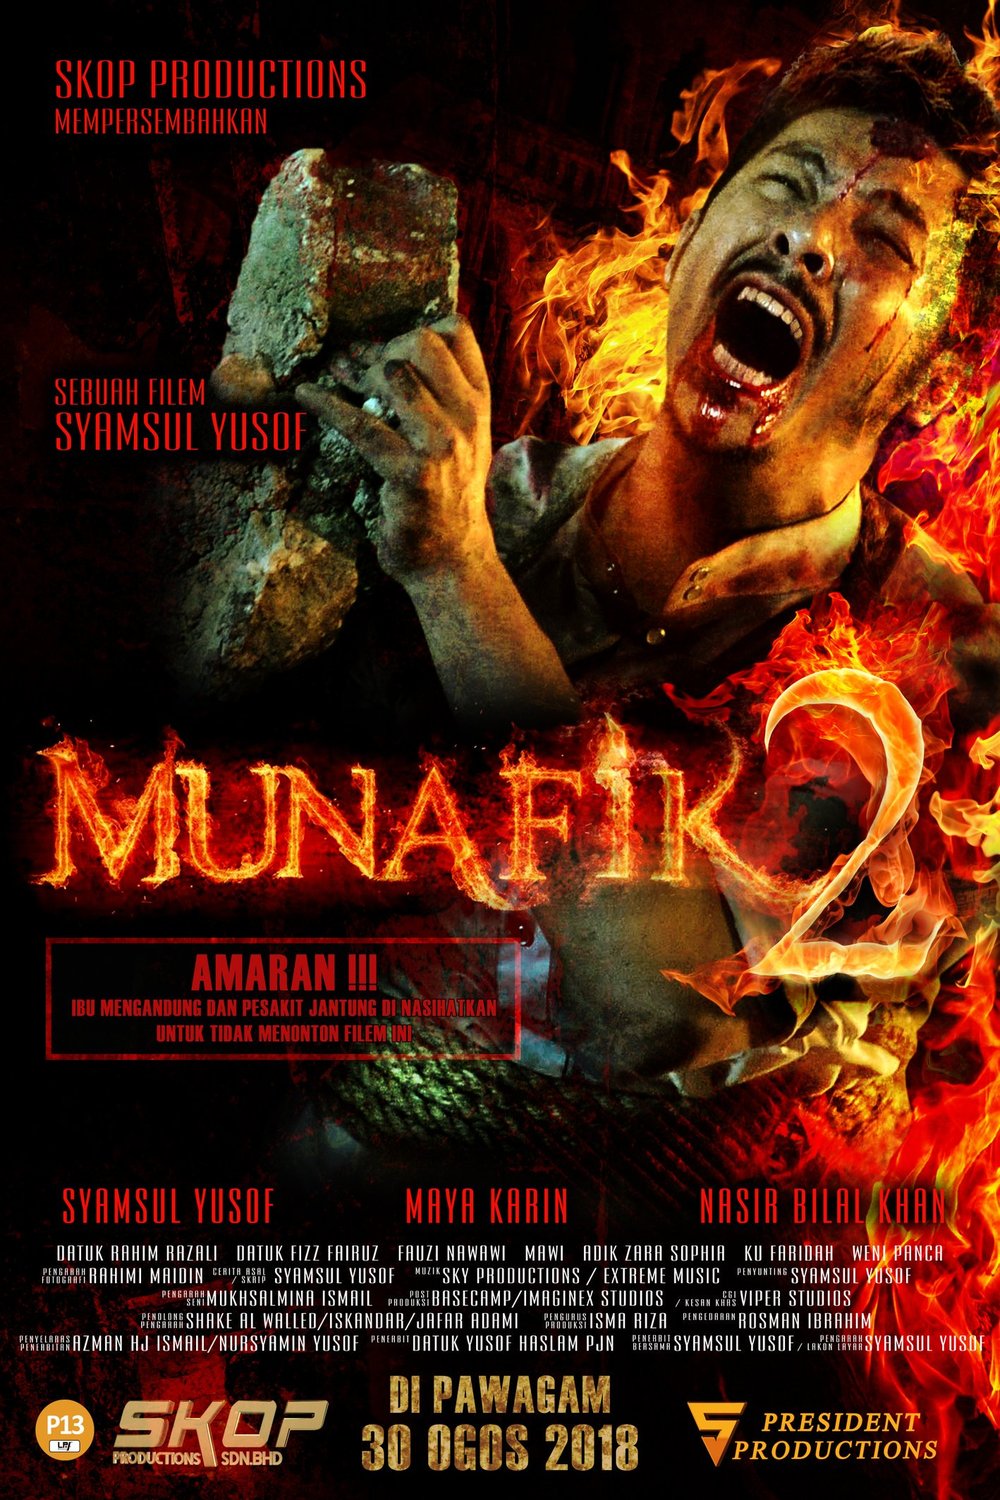 L'affiche originale du film Munafik 2 en Malais